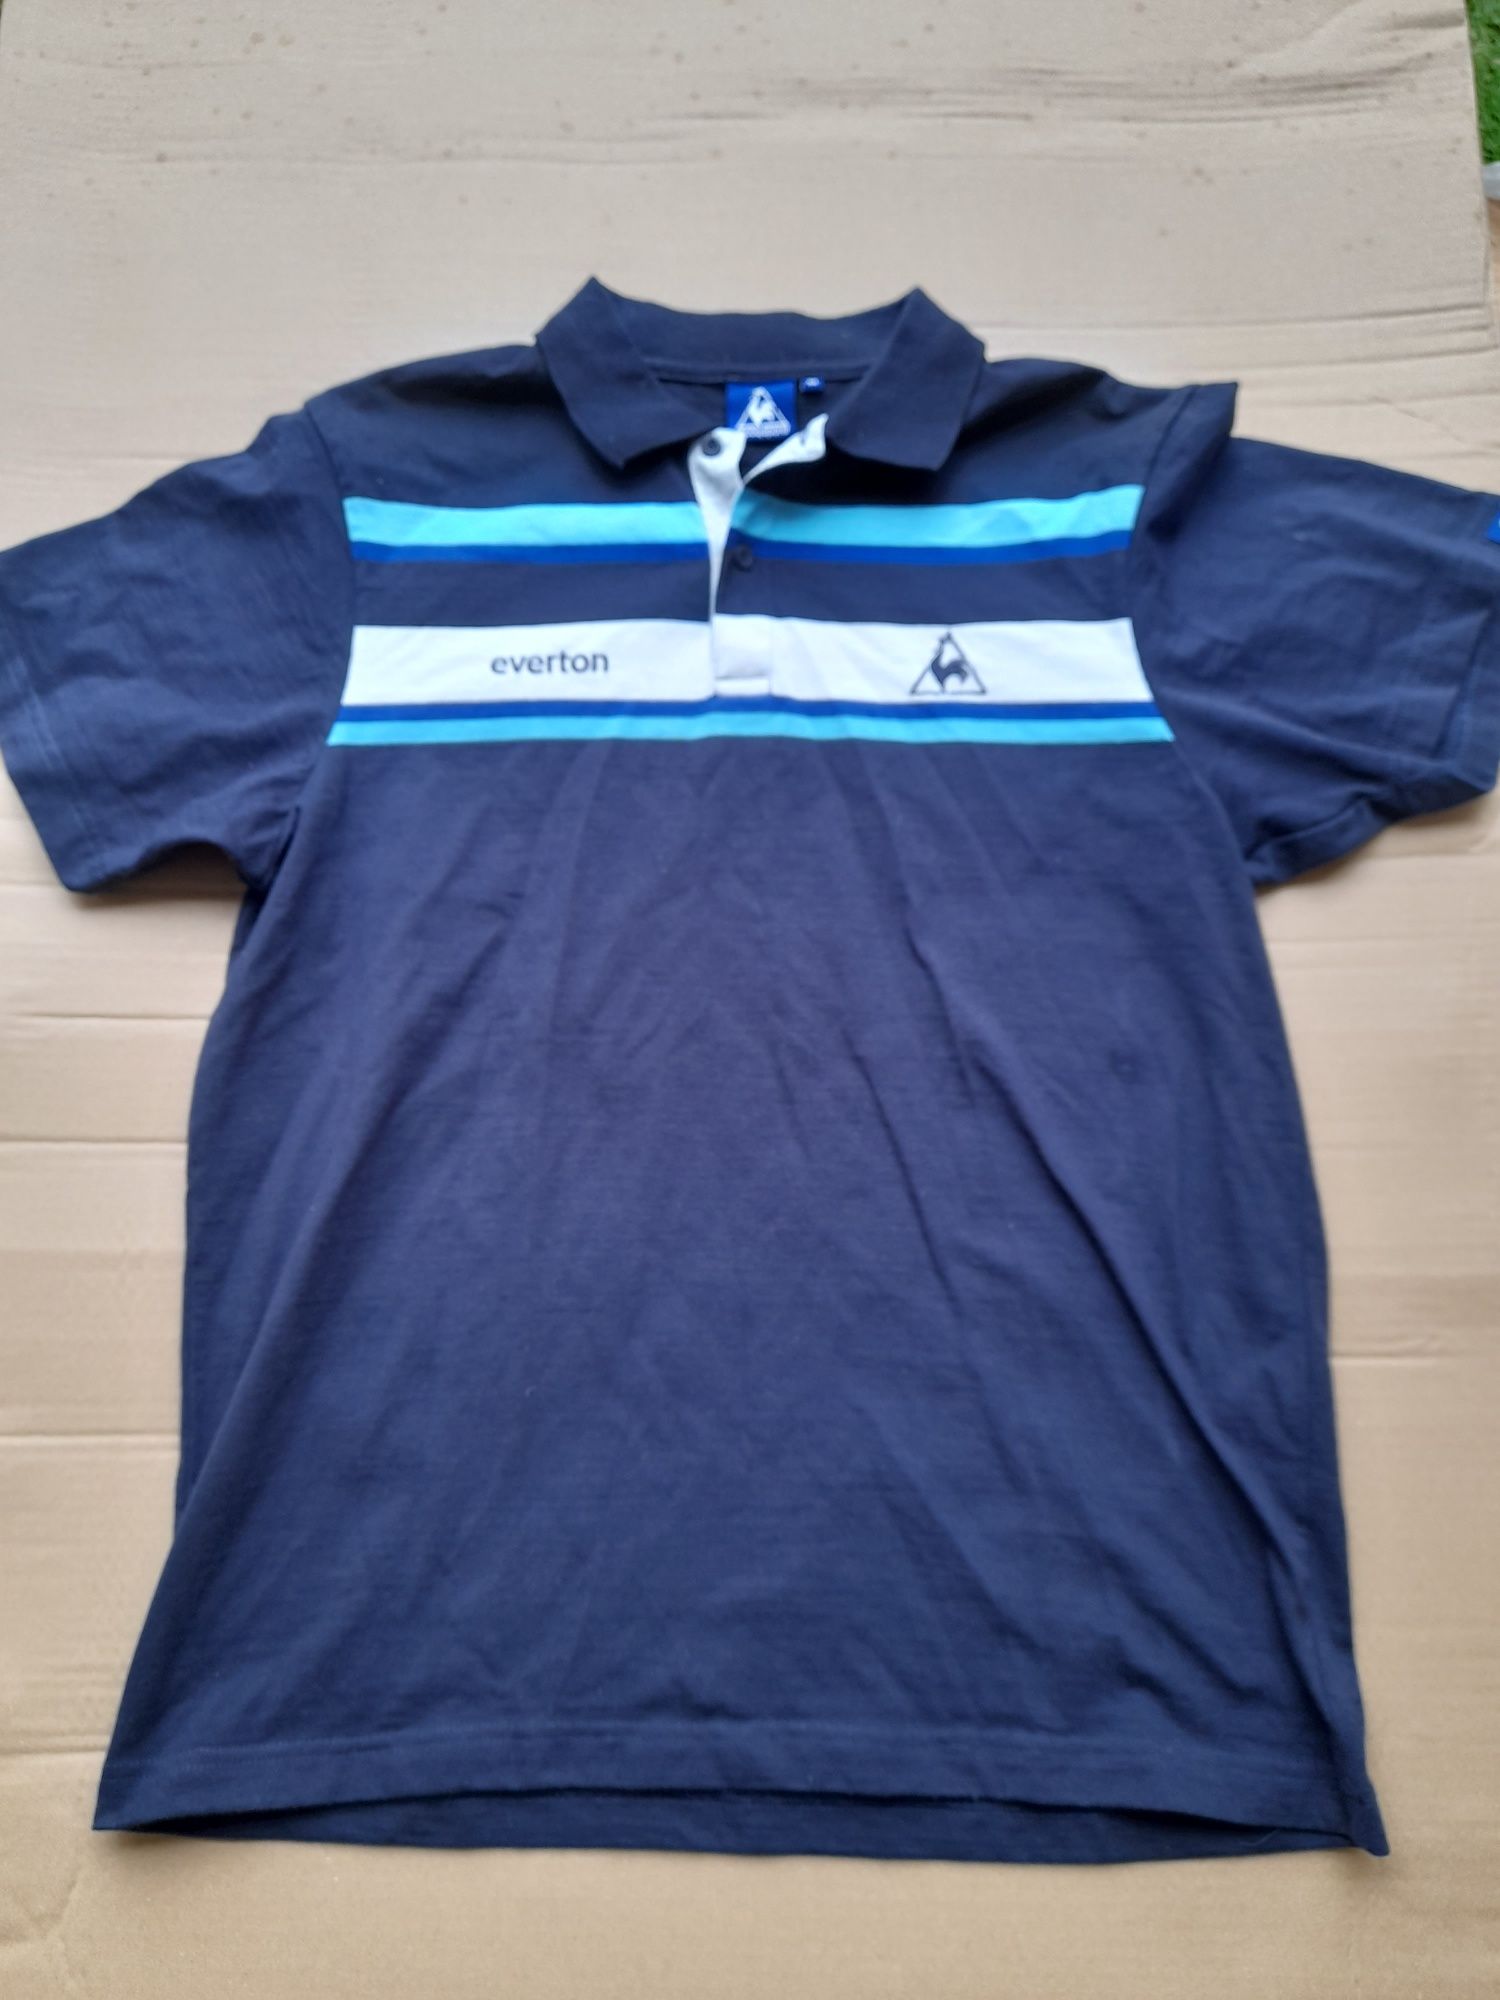 Koszulka firmy Le coq sportif klubu piłkarskiego Everton